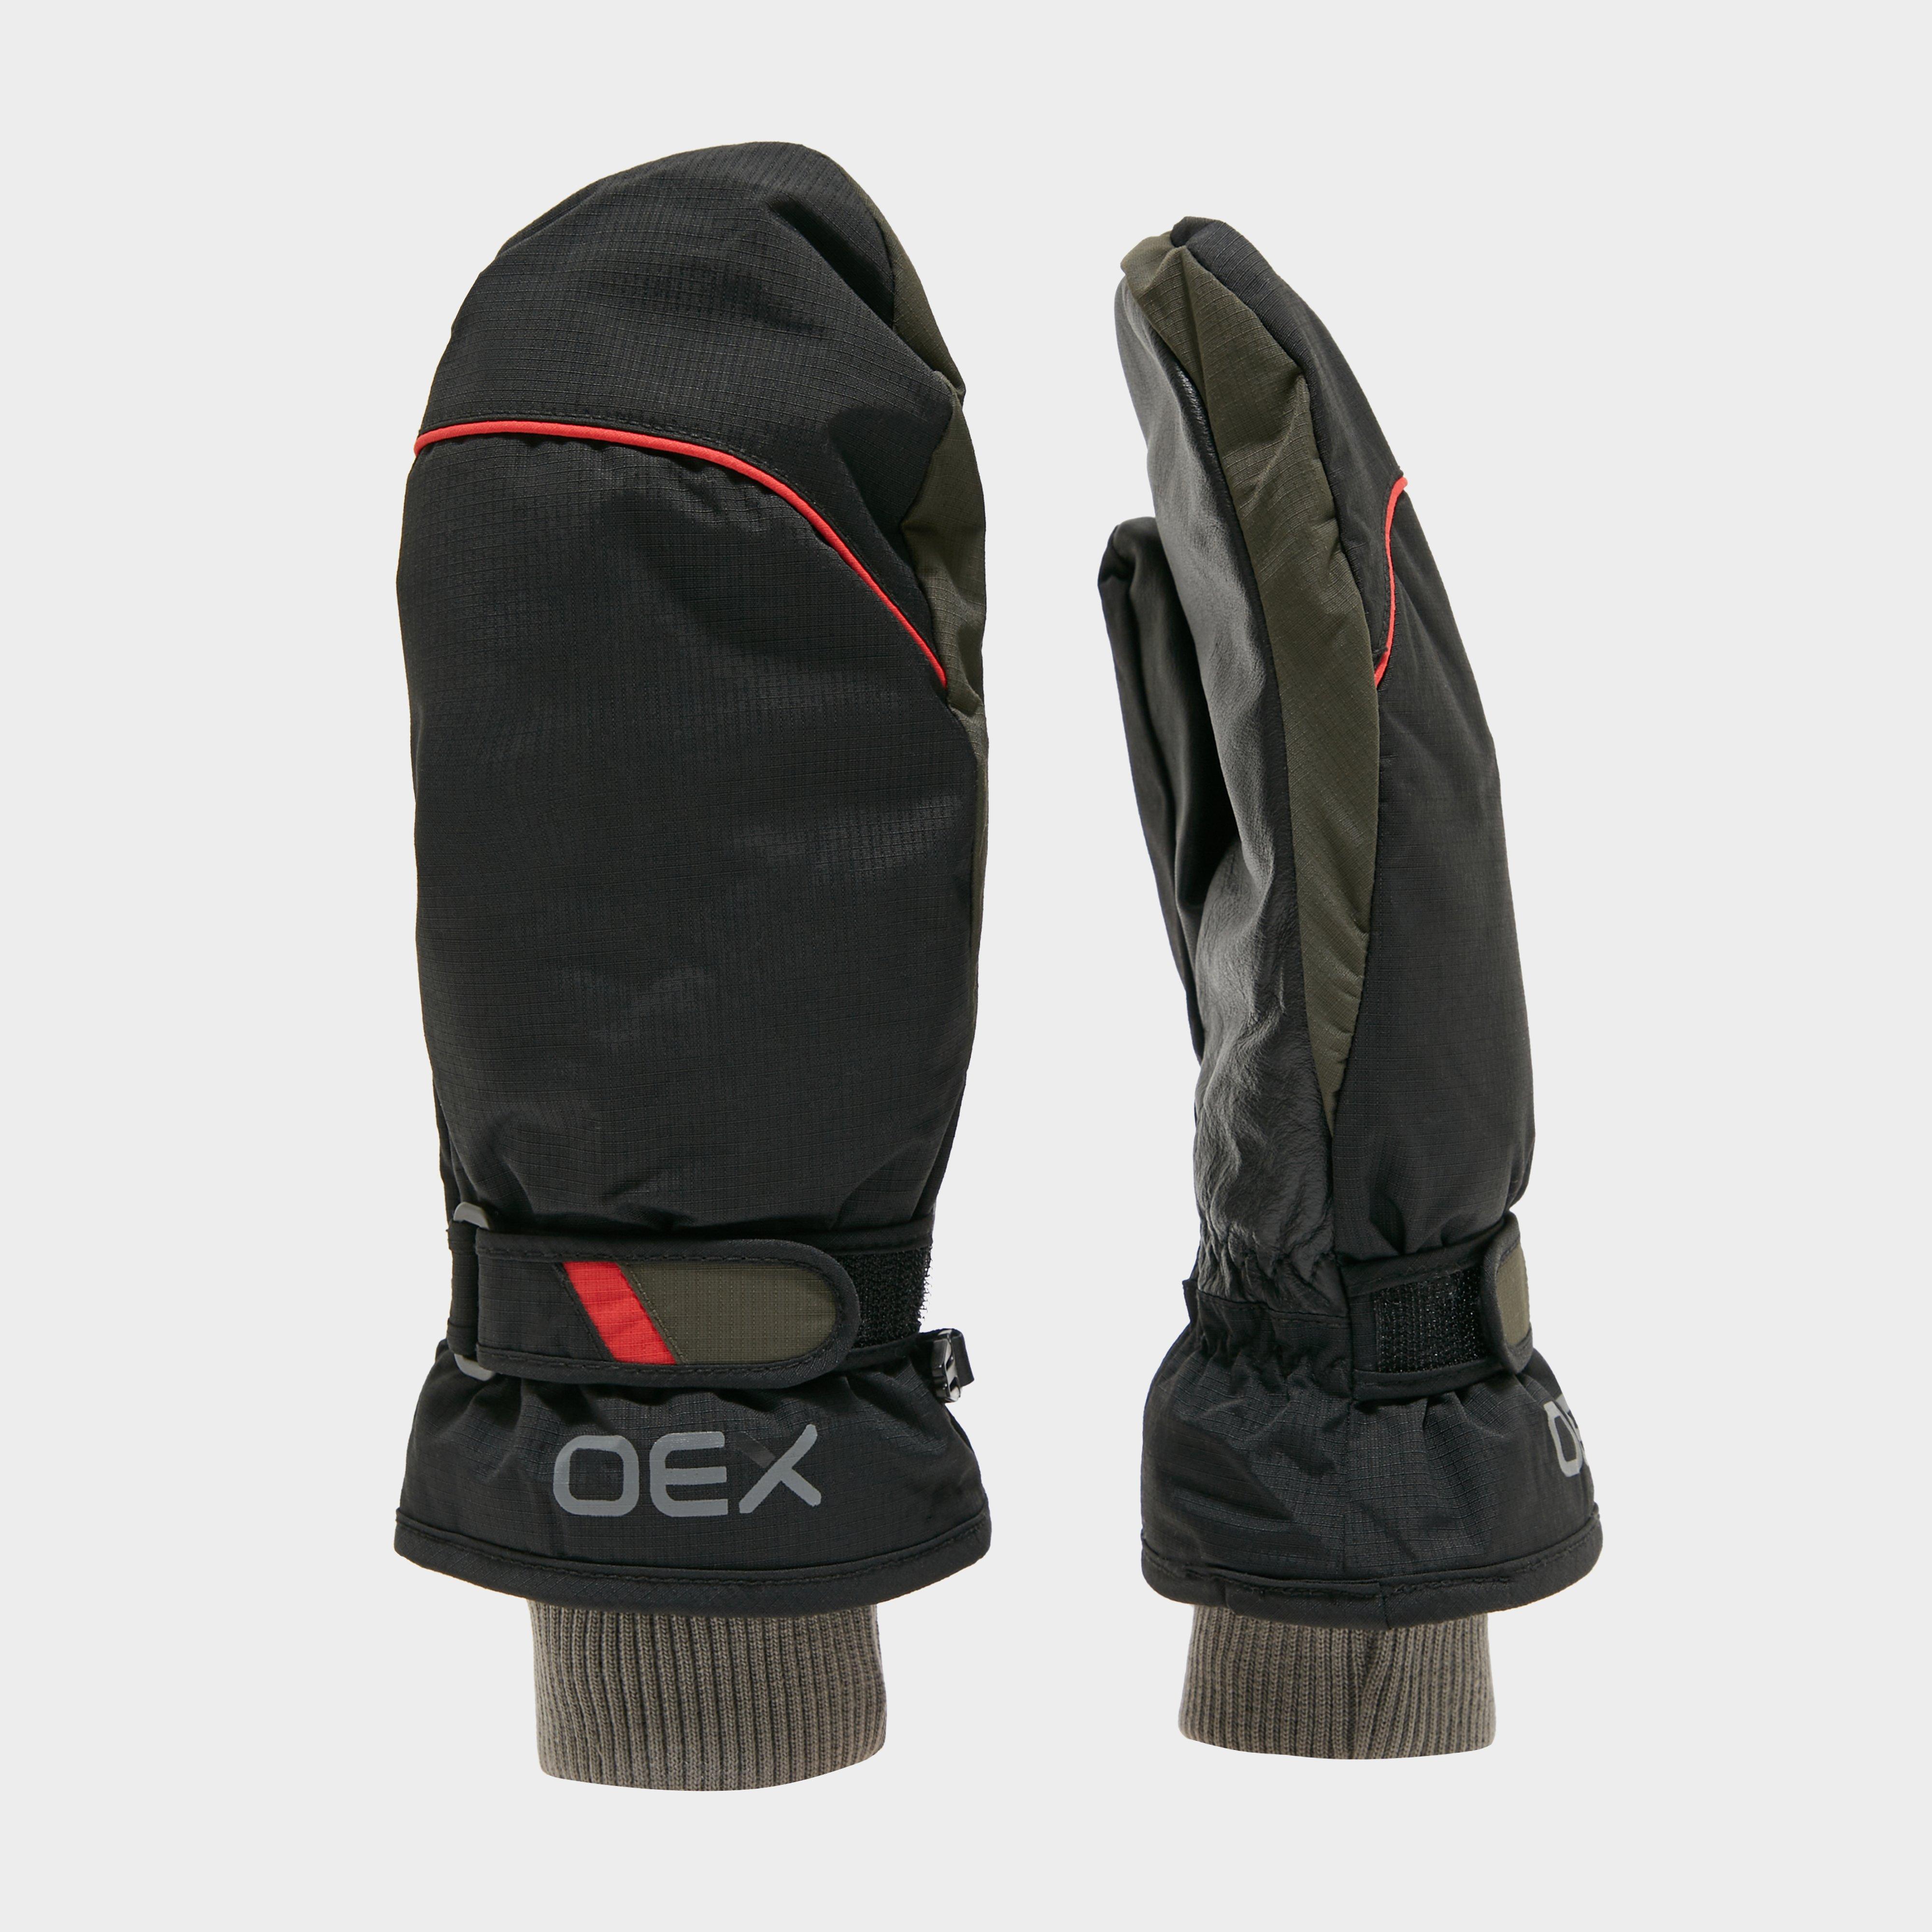 Photos - Winter Gloves & Mittens OEX Summit Waterproof Mitts, Black 